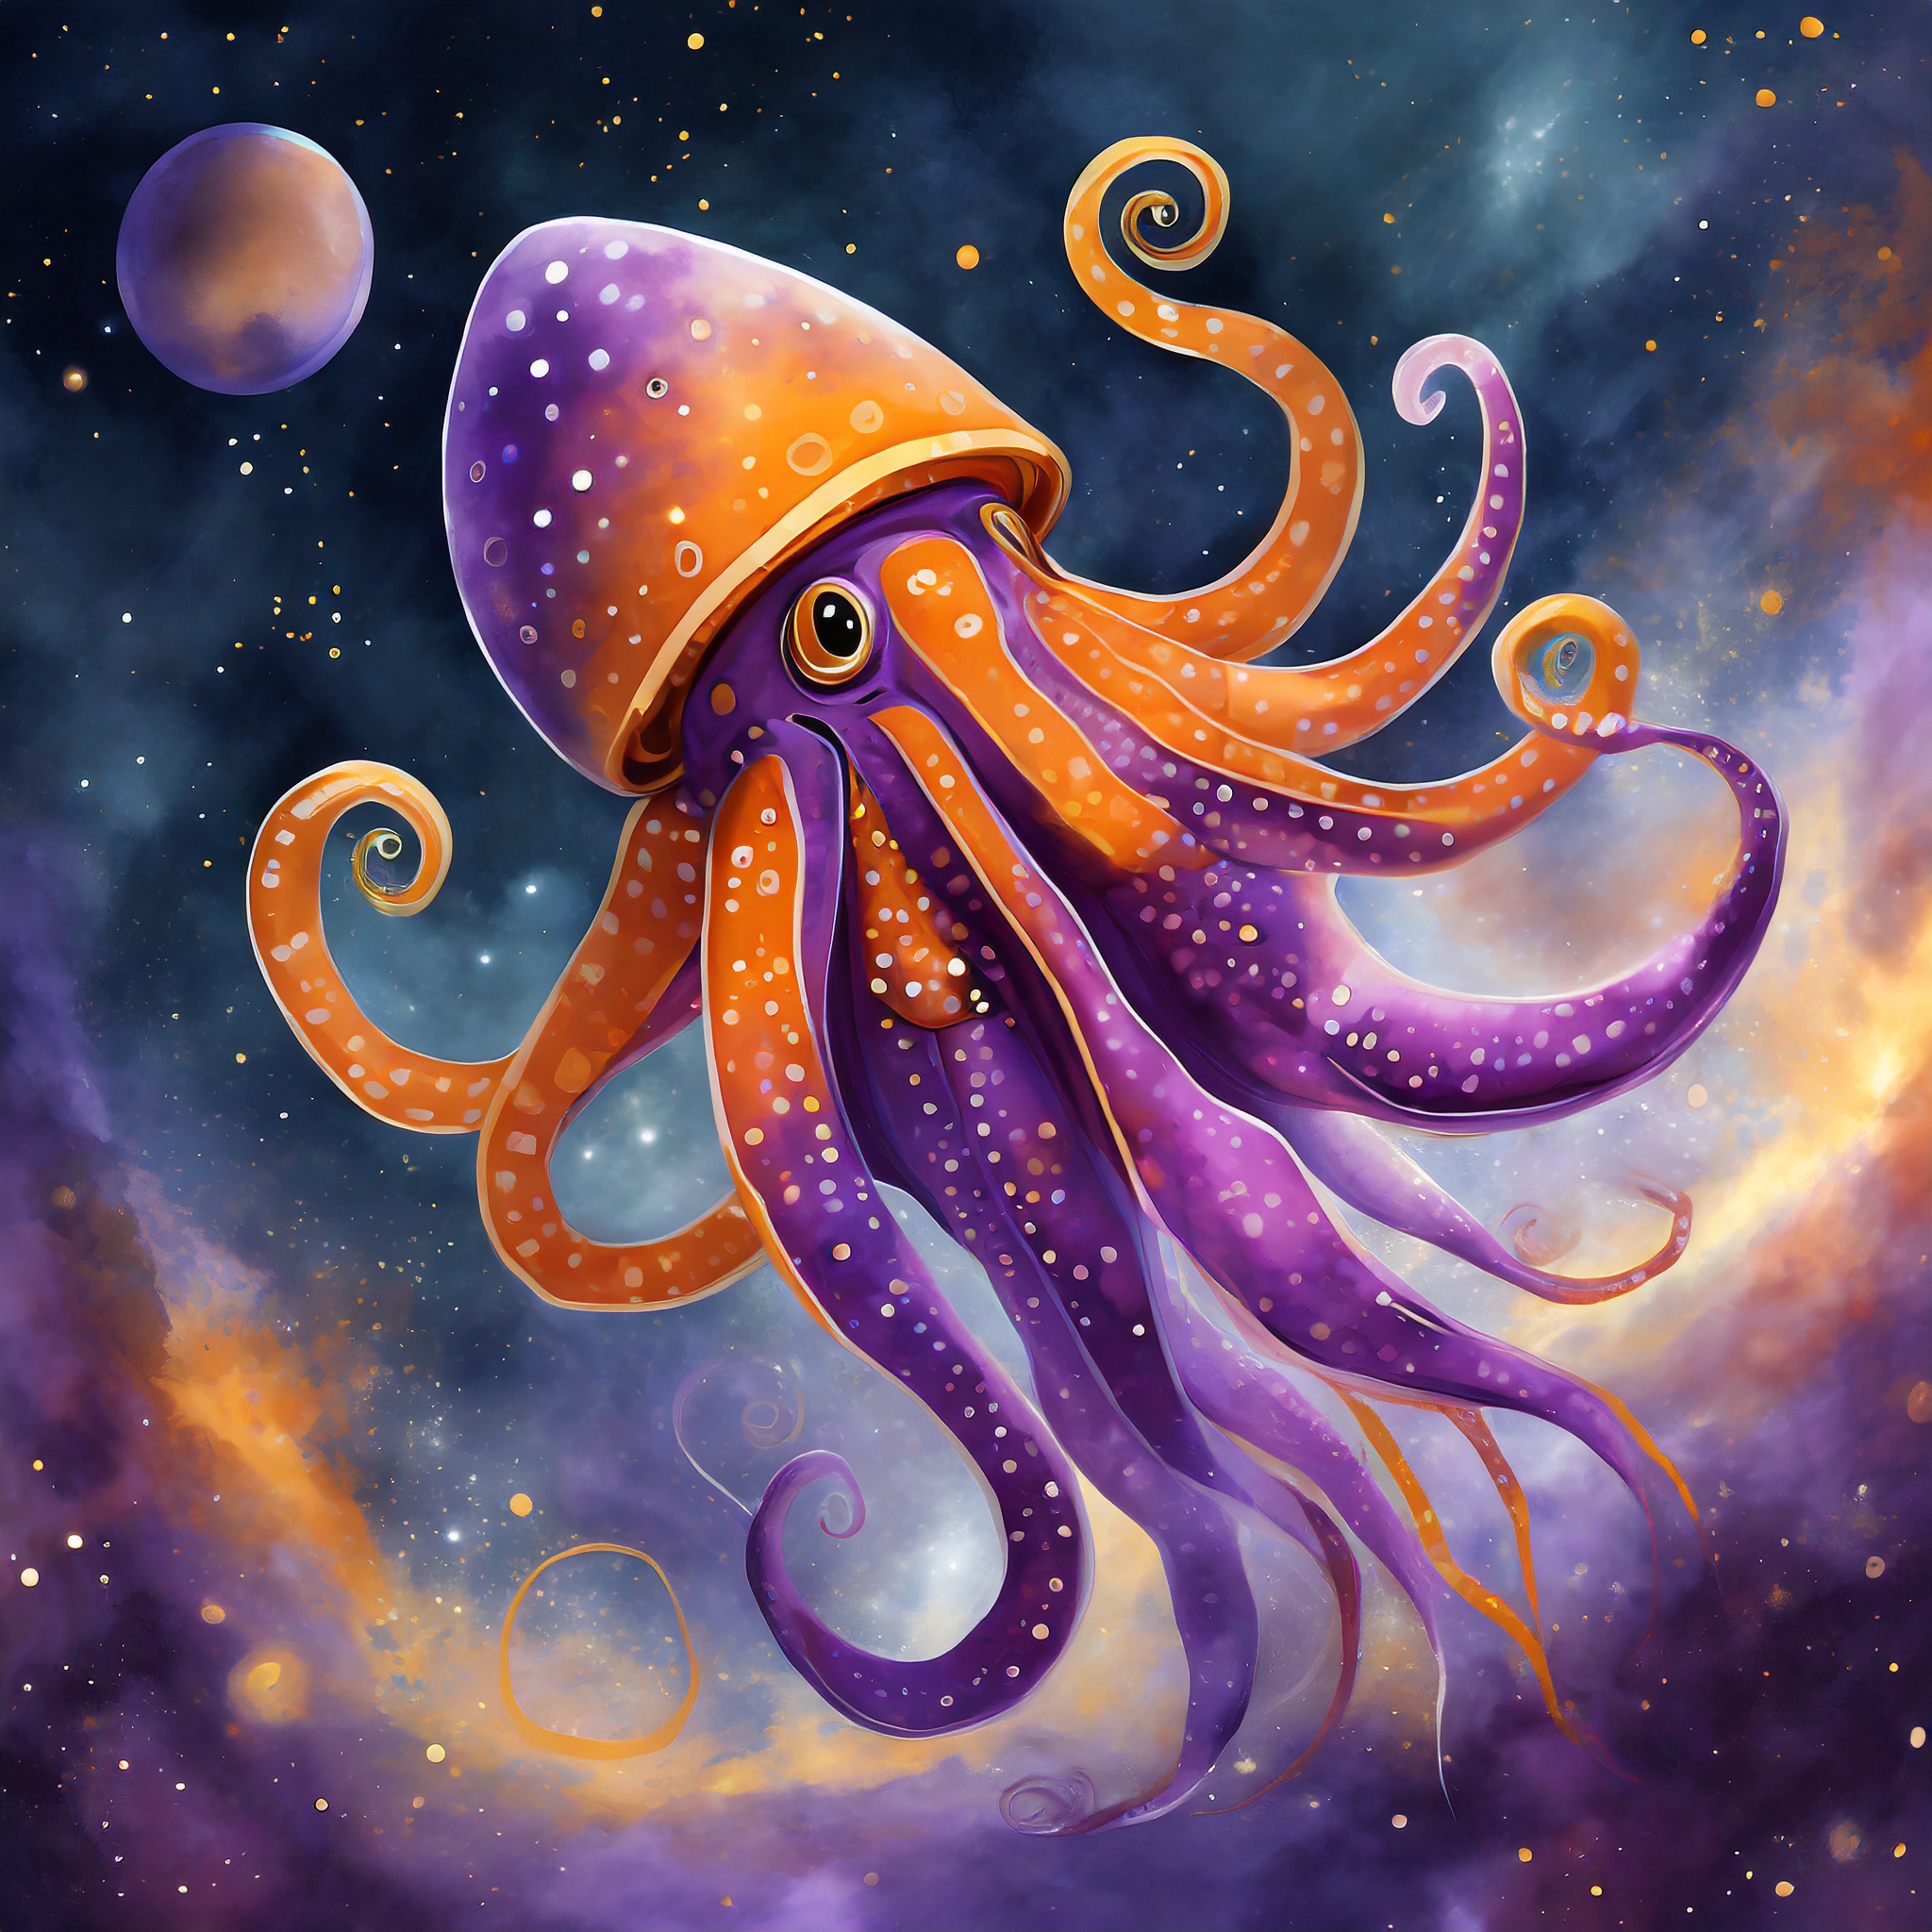 Interstellar space squid